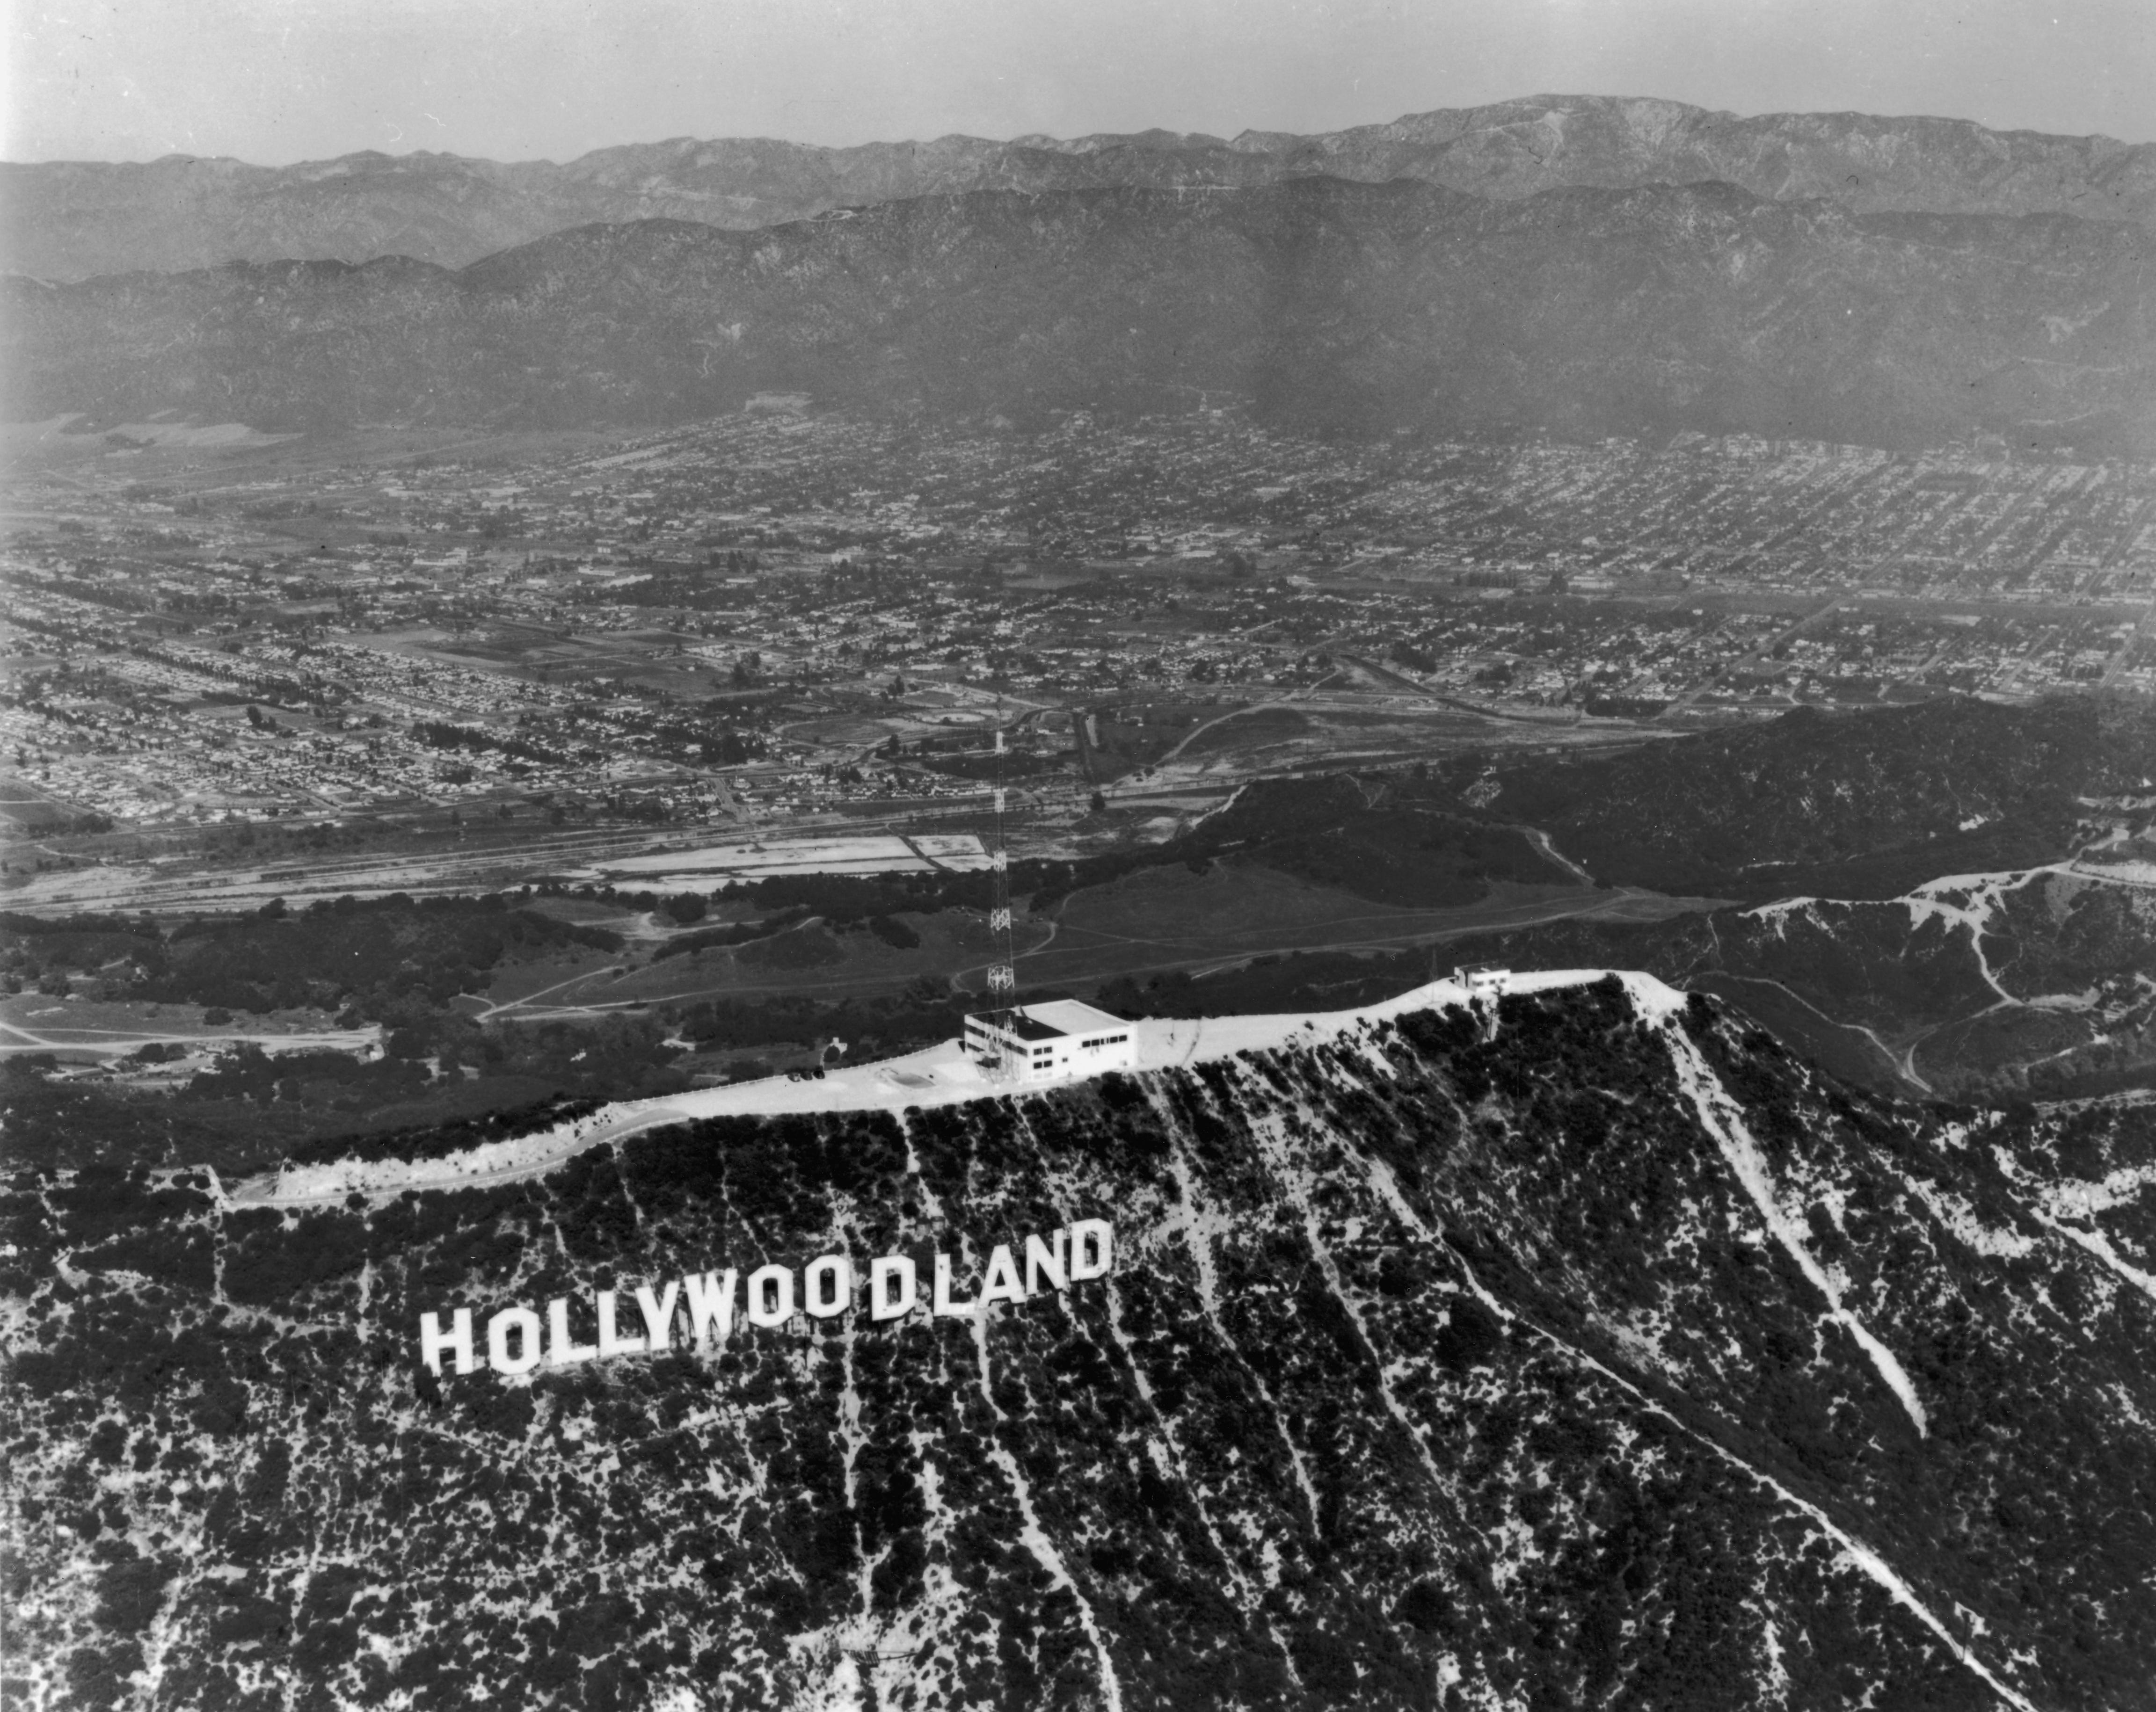 Um 1935: Hollywoodland-Schild, Hollywood, Kalifornien.  Der „Land“-Teil des Schildes wurde 1949 entfernt.